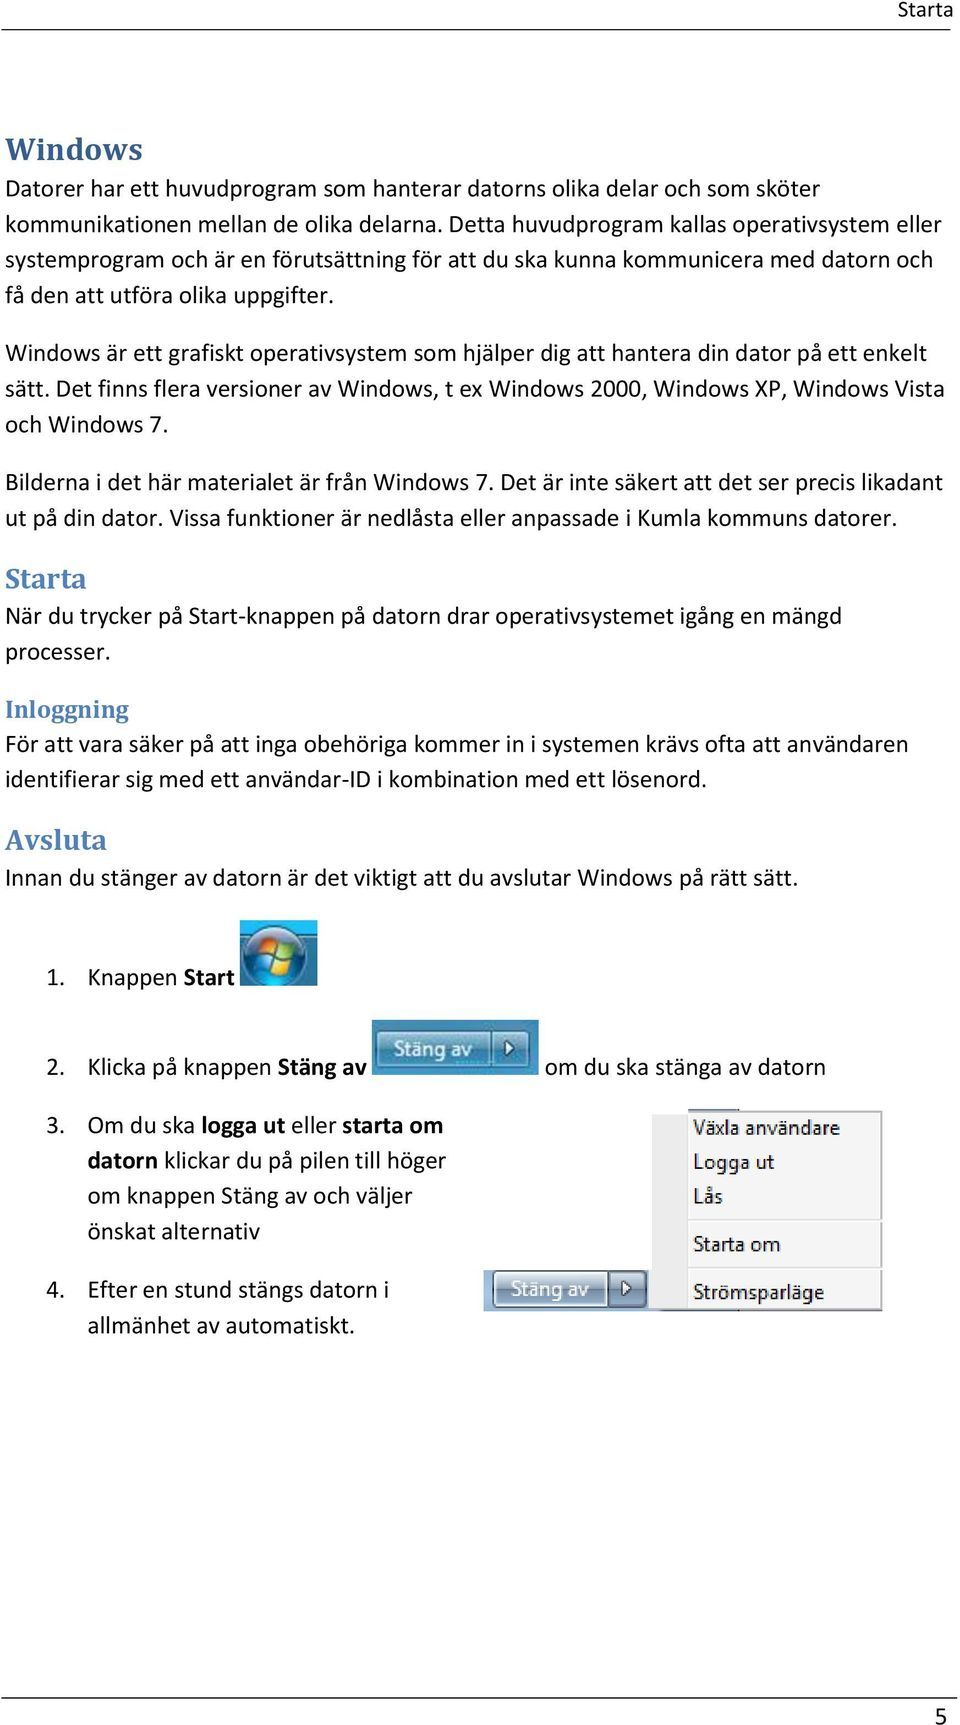 Windows är ett grafiskt operativsystem som hjälper dig att hantera din dator på ett enkelt sätt. Det finns flera versioner av Windows, t ex Windows 2000, Windows XP, Windows Vista och Windows 7.